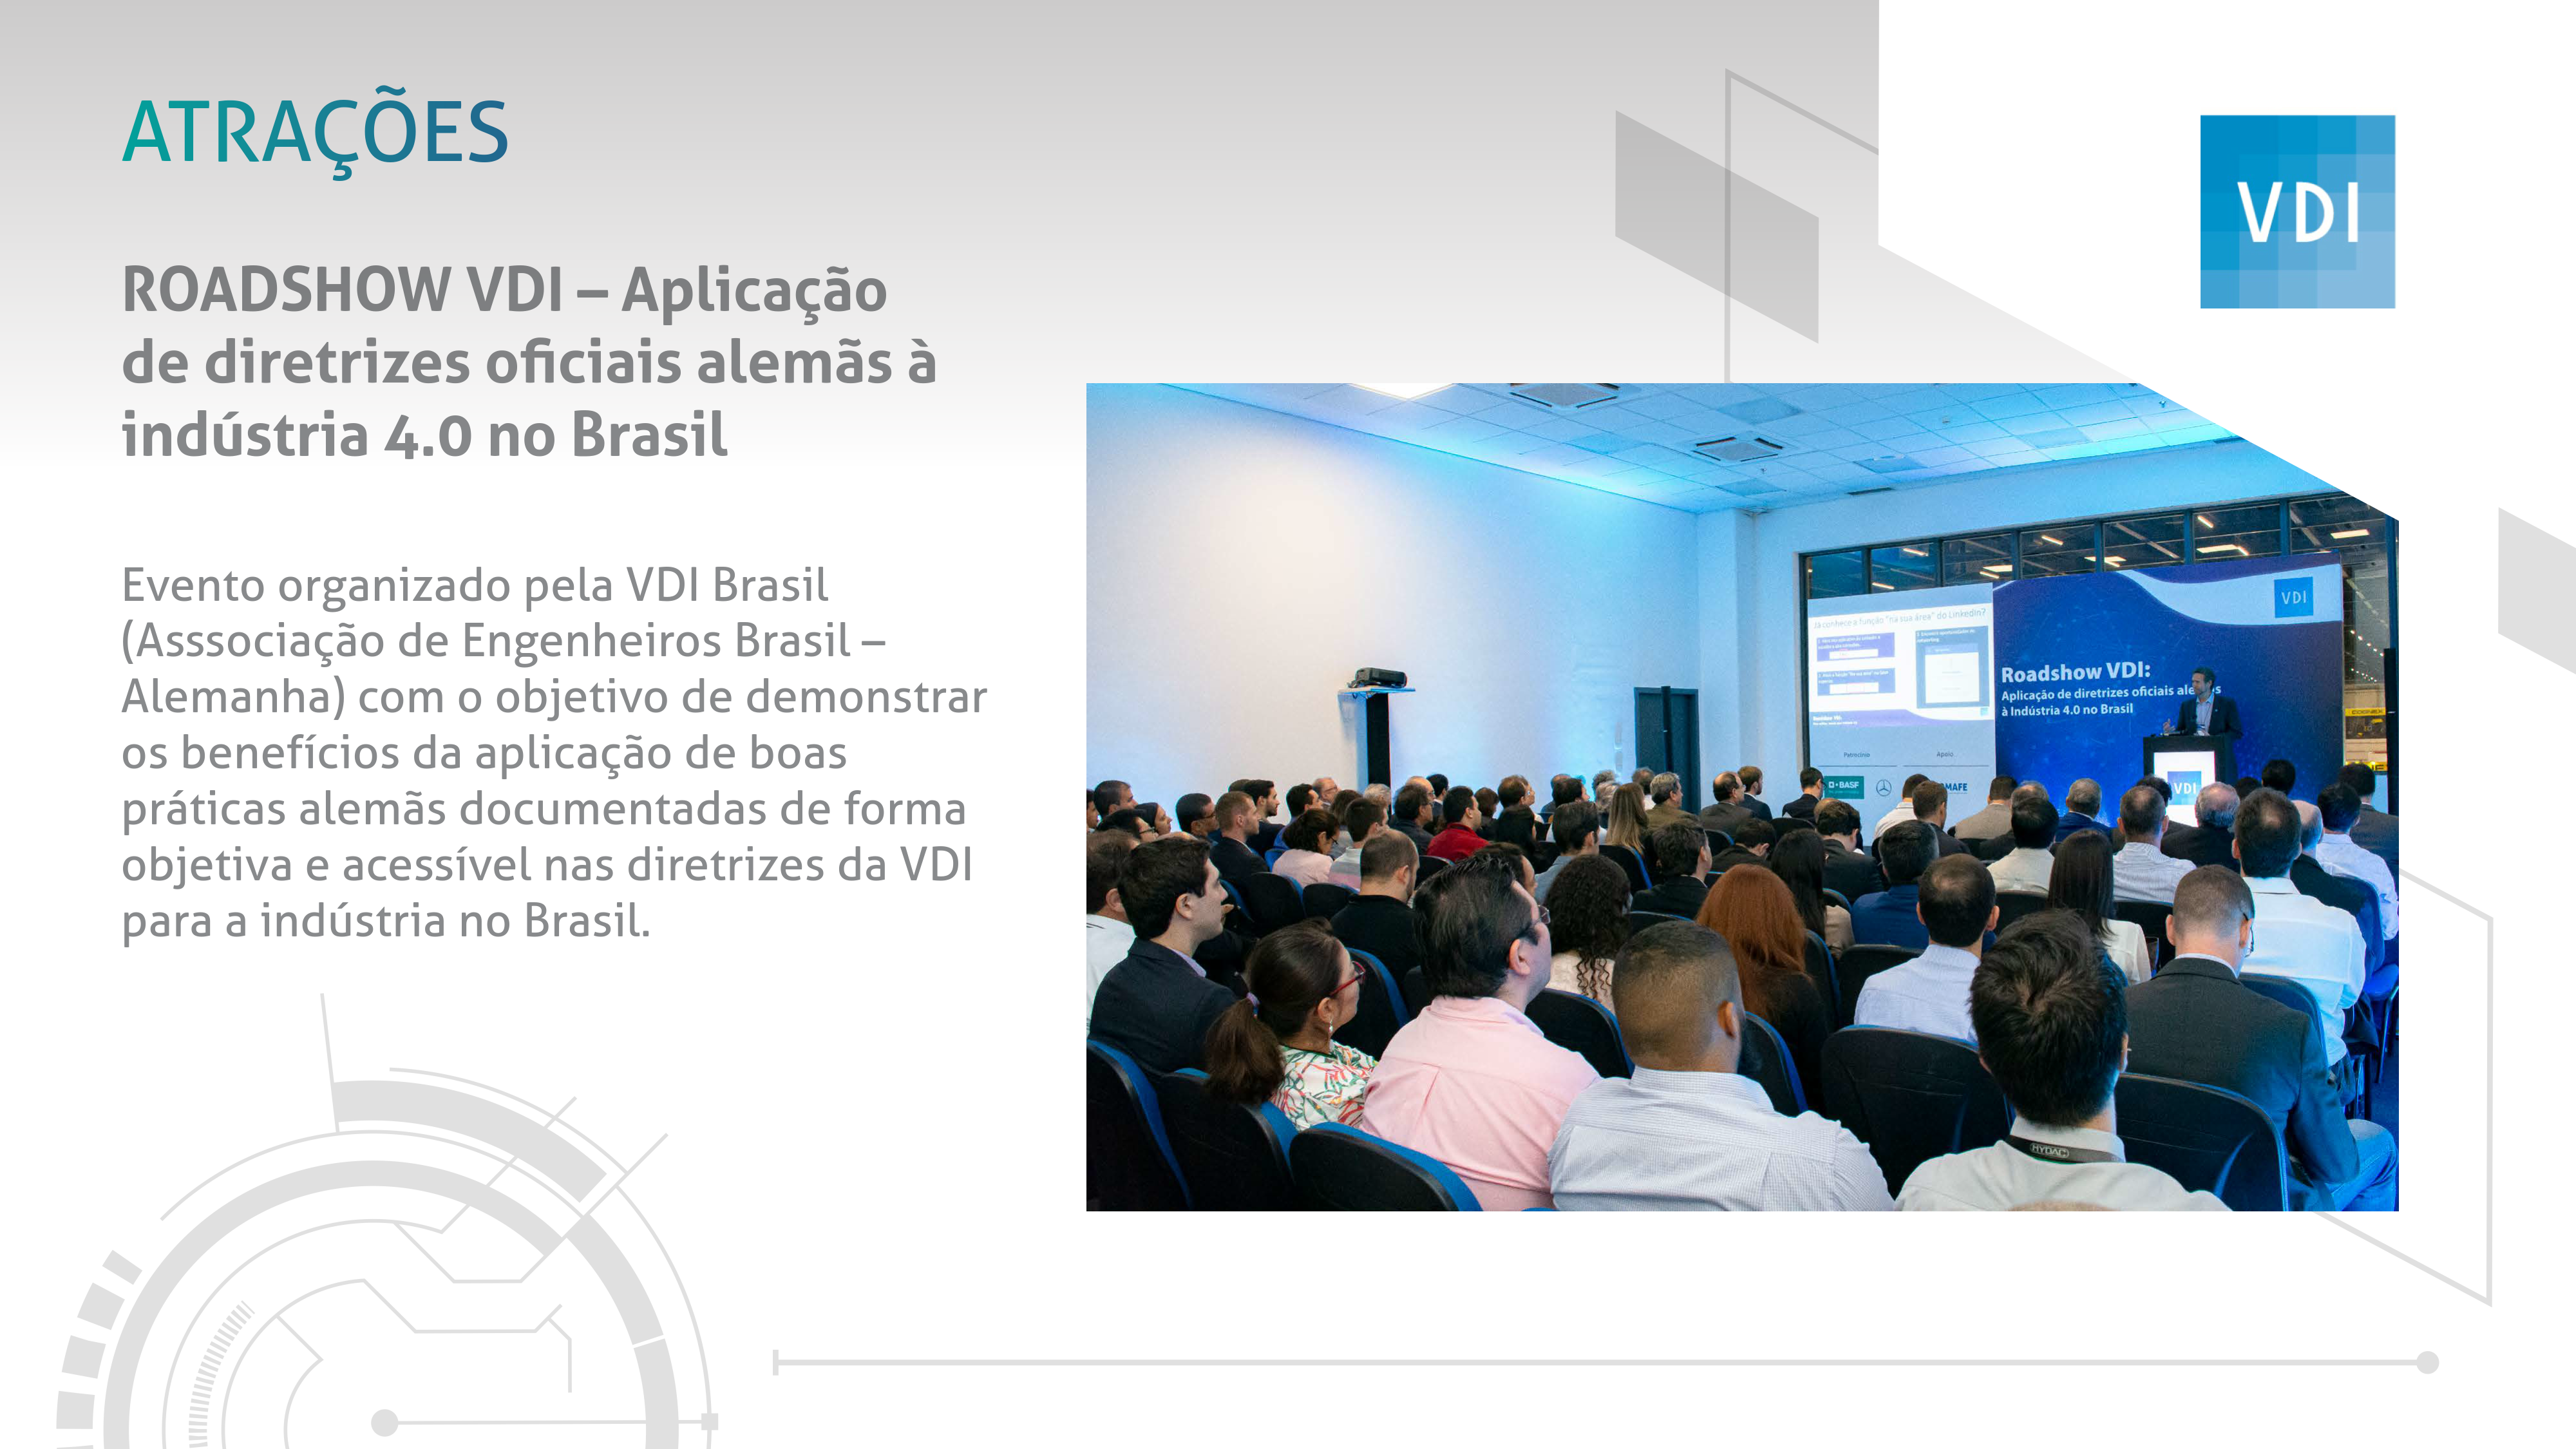 巴西圣保羅機械設備及機床展覽會EXPOMAFE